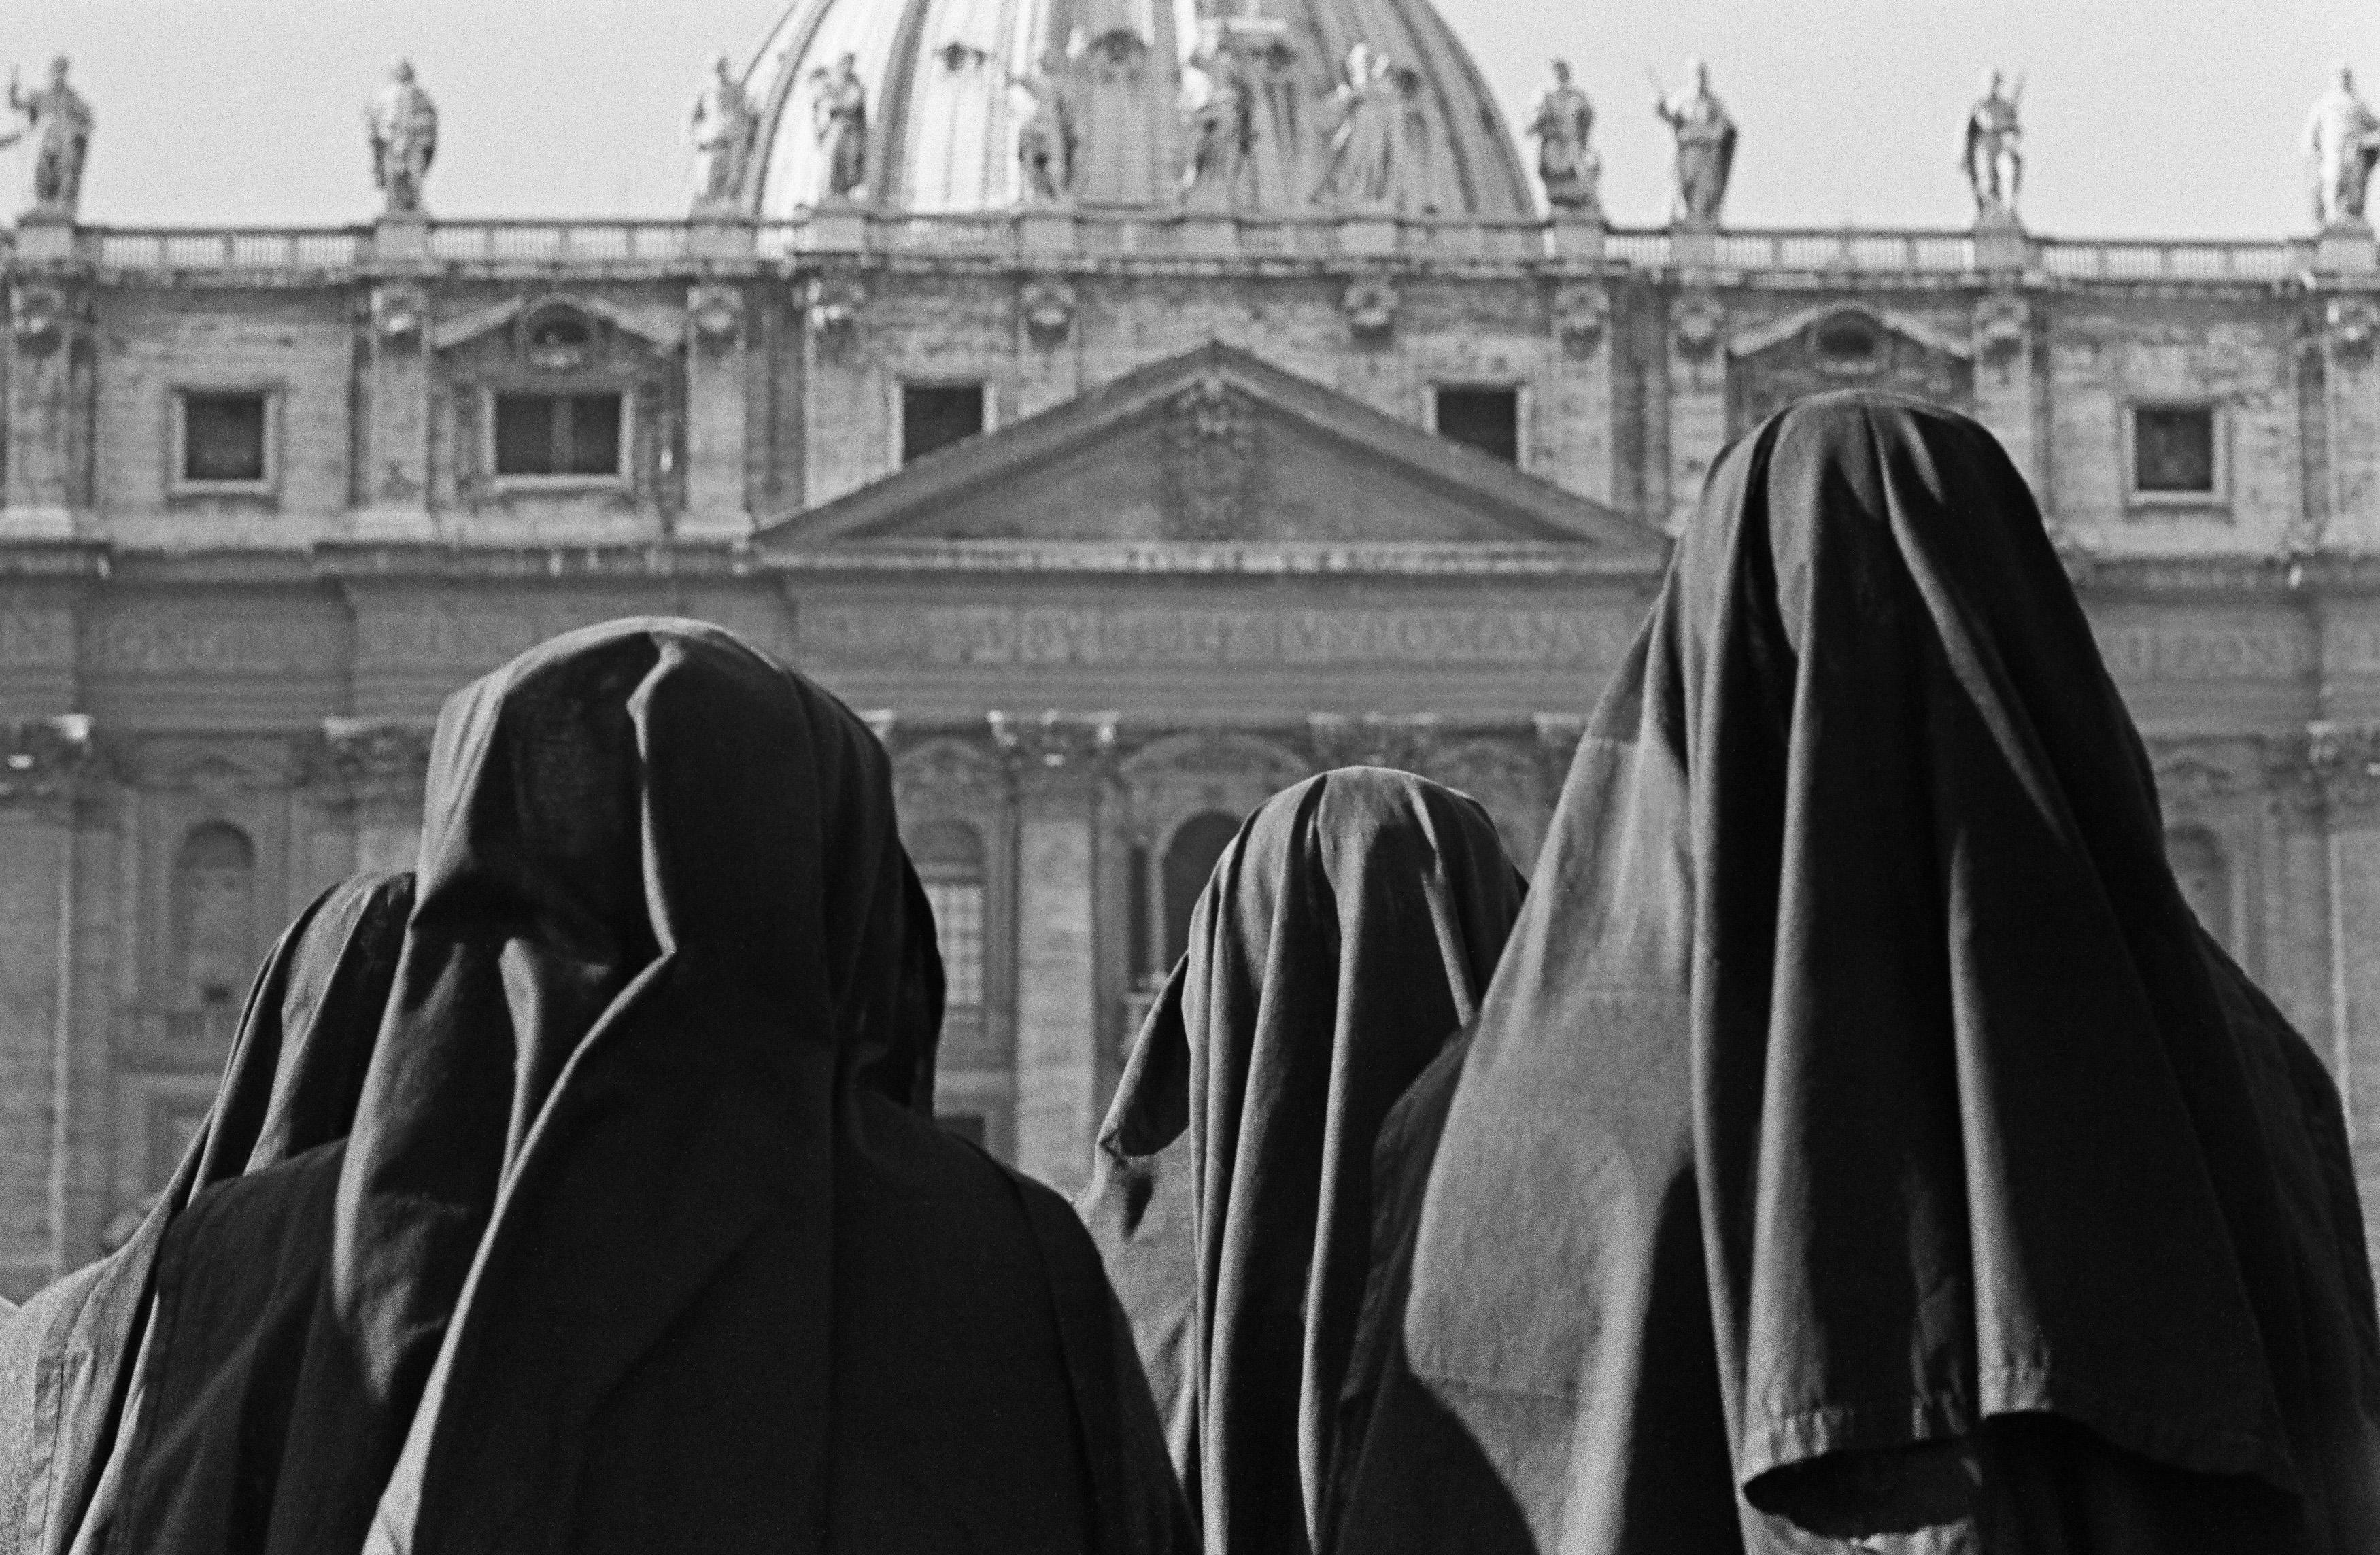 Fabrizio La Torre Black and White Photograph - Un religioso ascolto, 1965 - Roma - Framed Contemporary Black & White Photograph